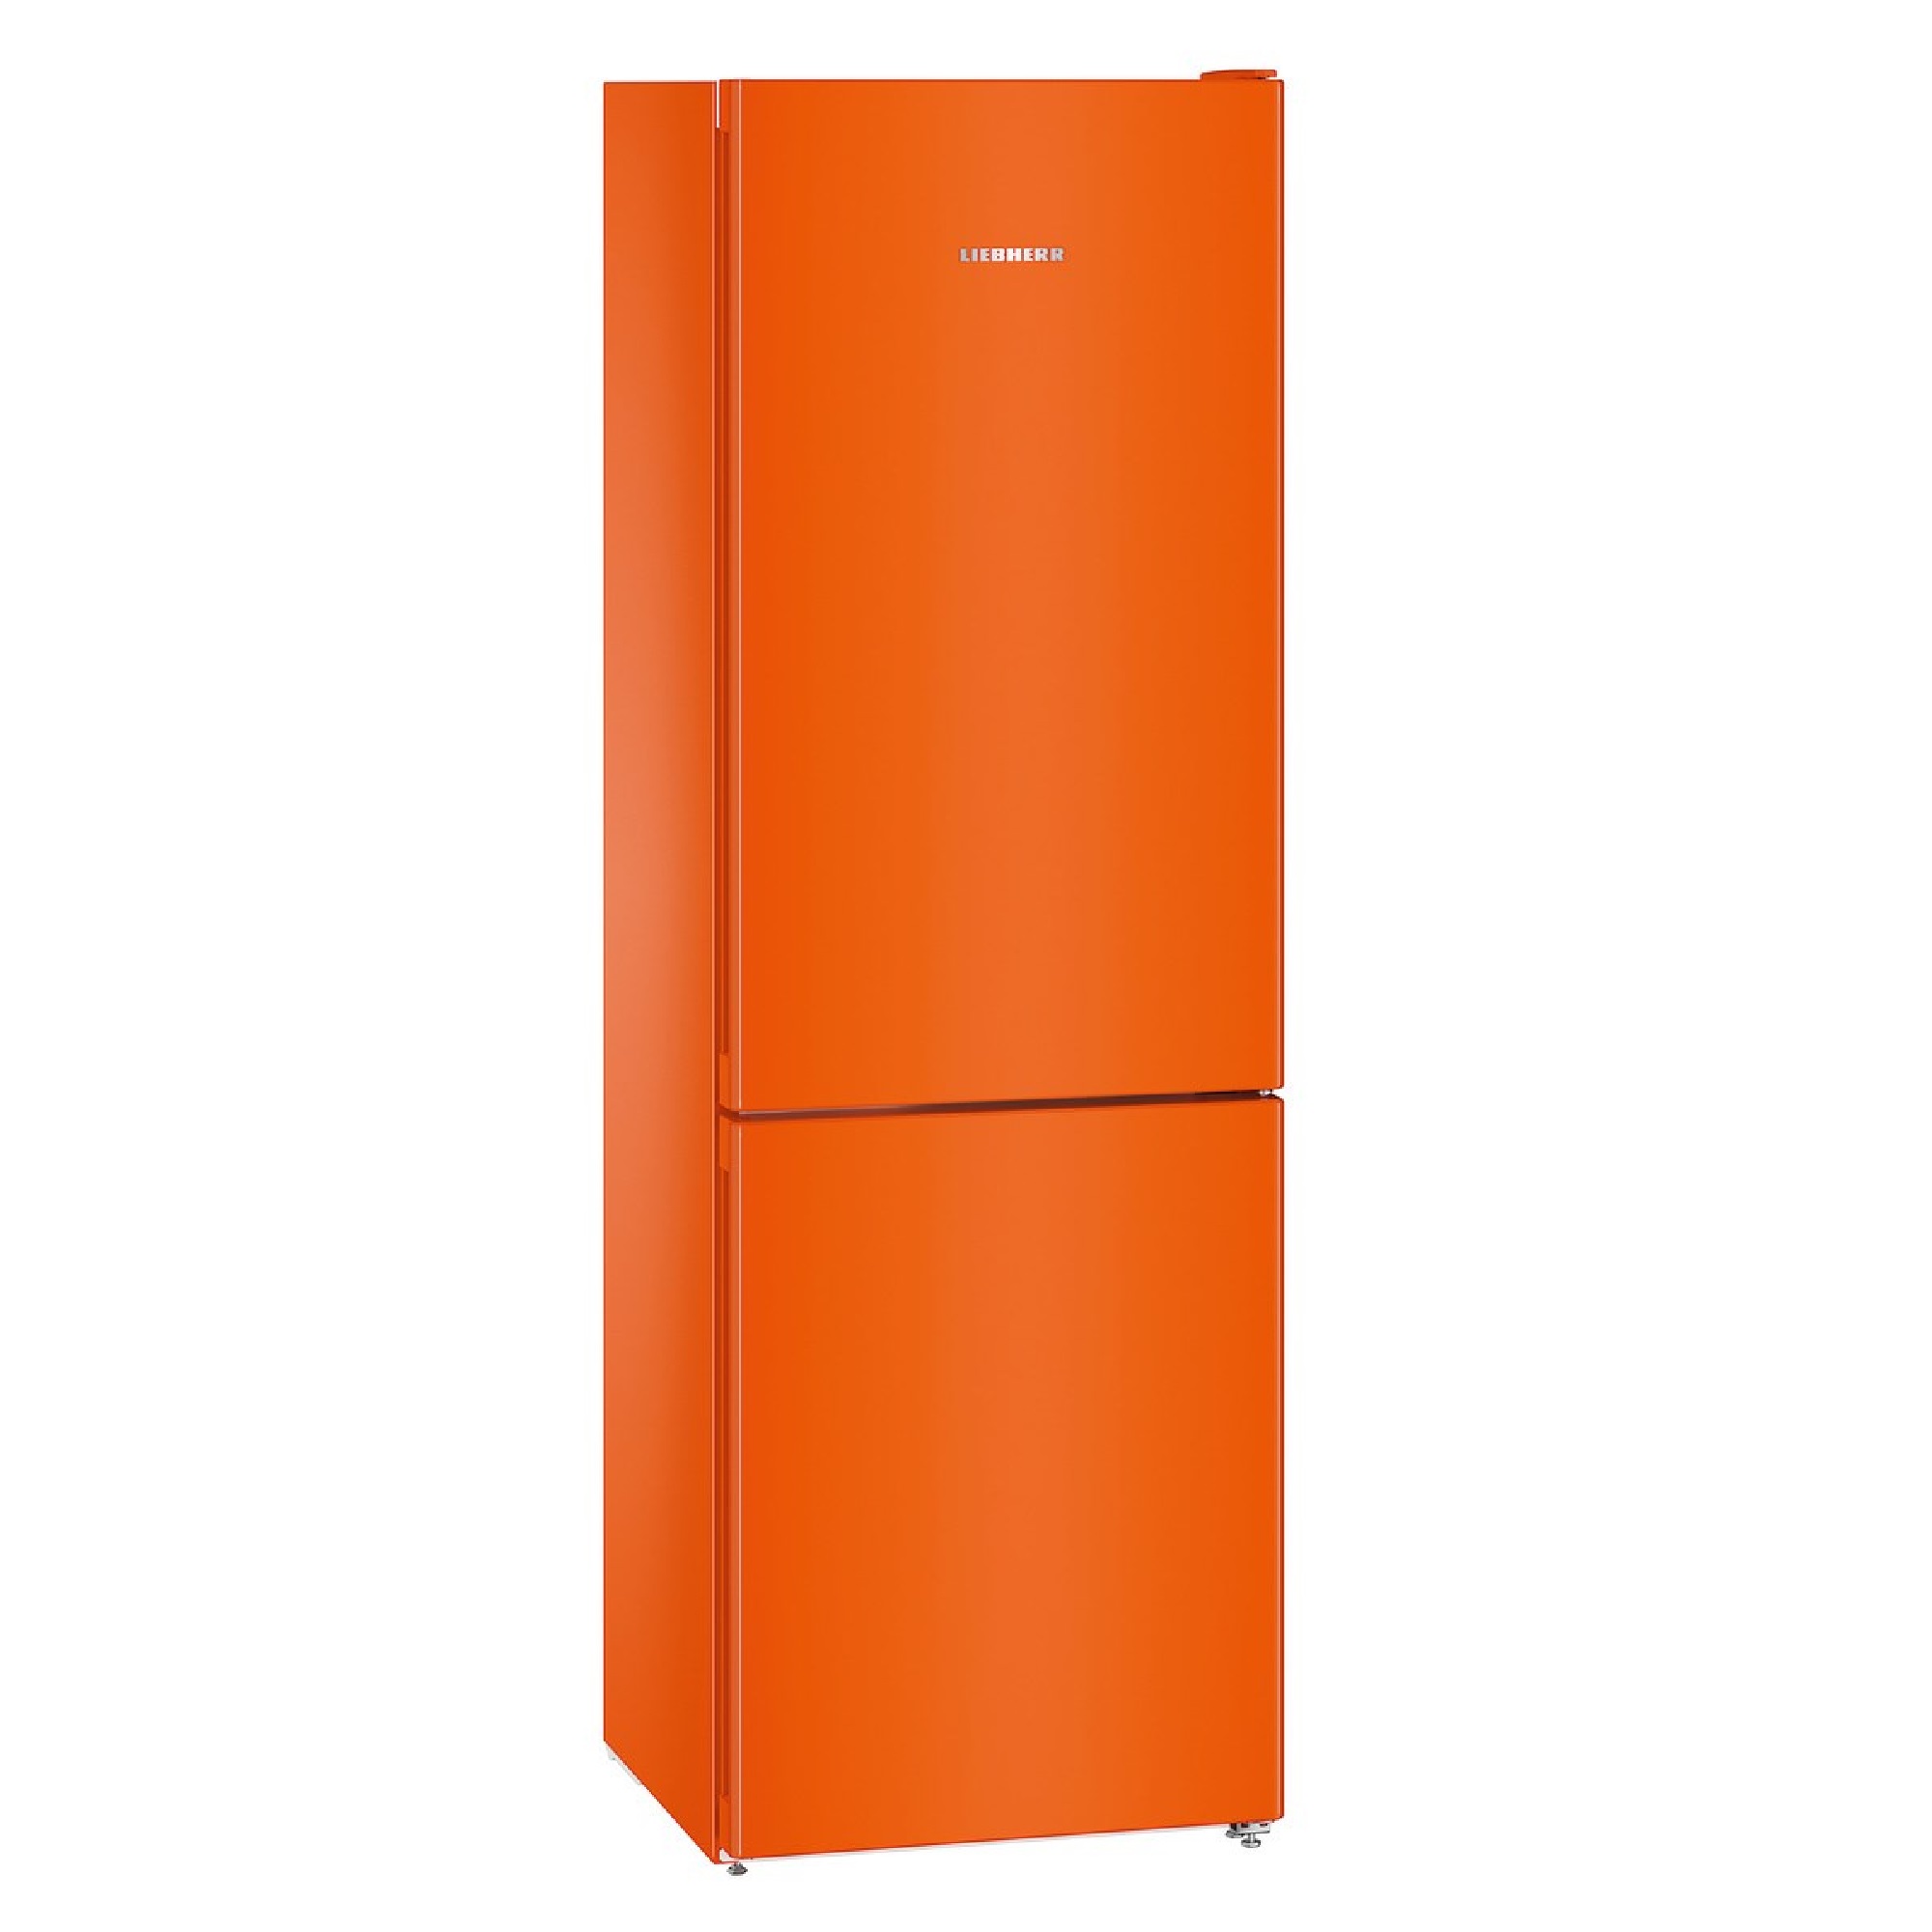 Купить холодильник в воронеже недорого. Холодильник Liebherr CNNO 4313 оранжевый. Liebherr CNNO 4313 оранжевый. Liebherr Cuno 2831. Холодильник Liebherr Cuno 2831 оранжевый.